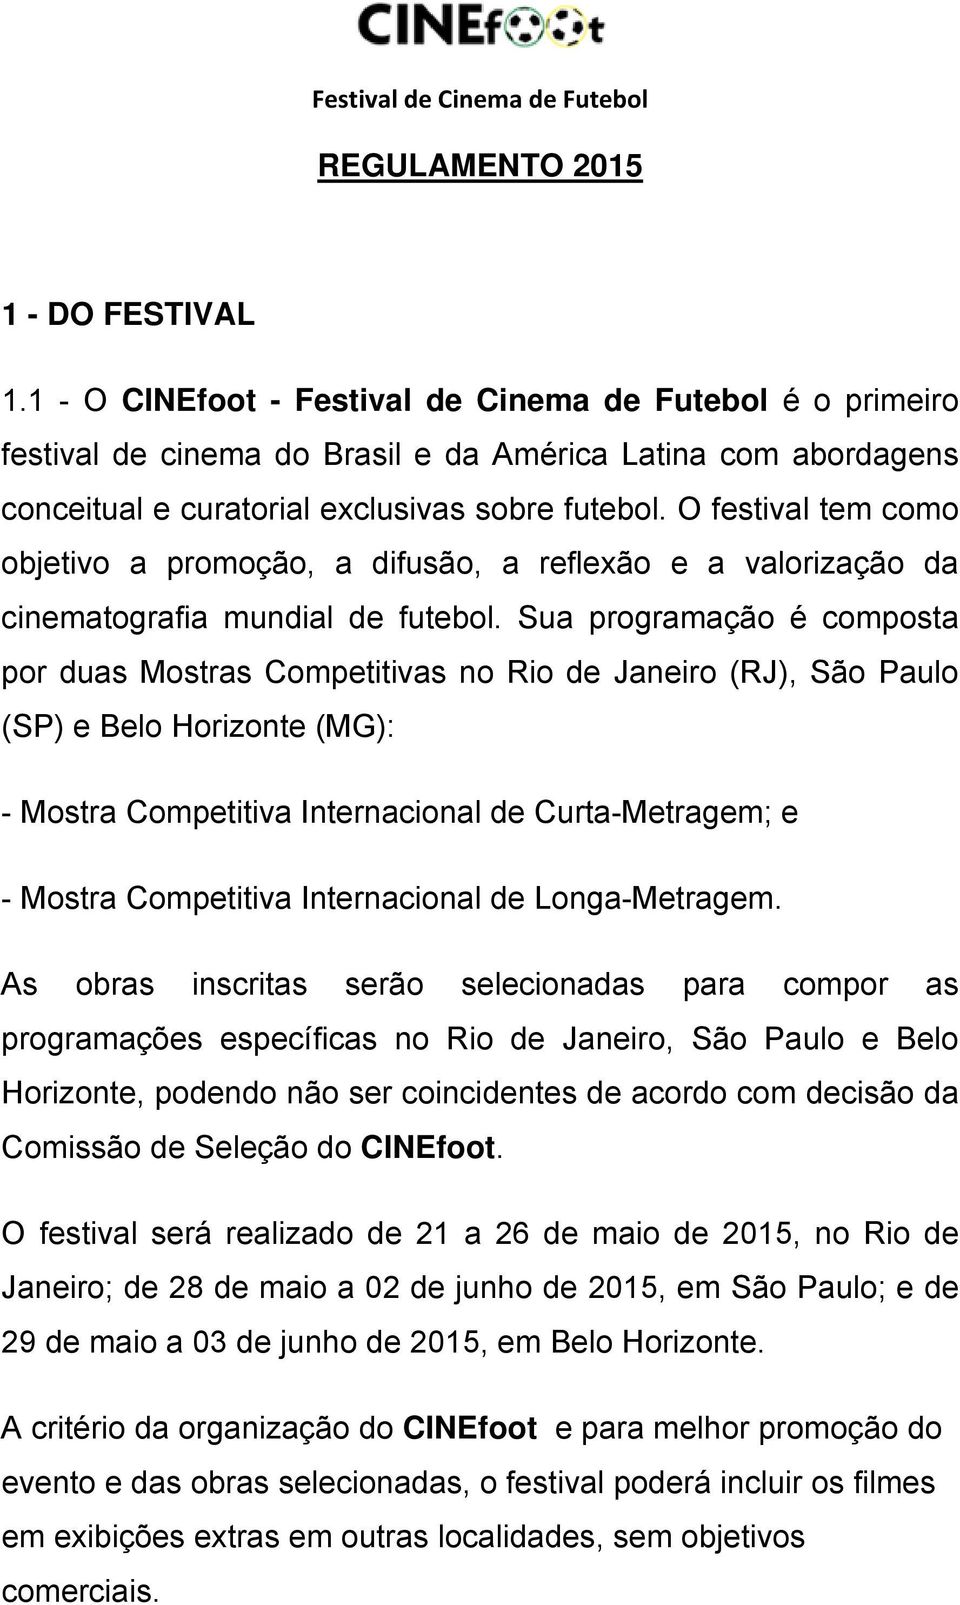 O festival tem como objetivo a promoção, a difusão, a reflexão e a valorização da cinematografia mundial de futebol.